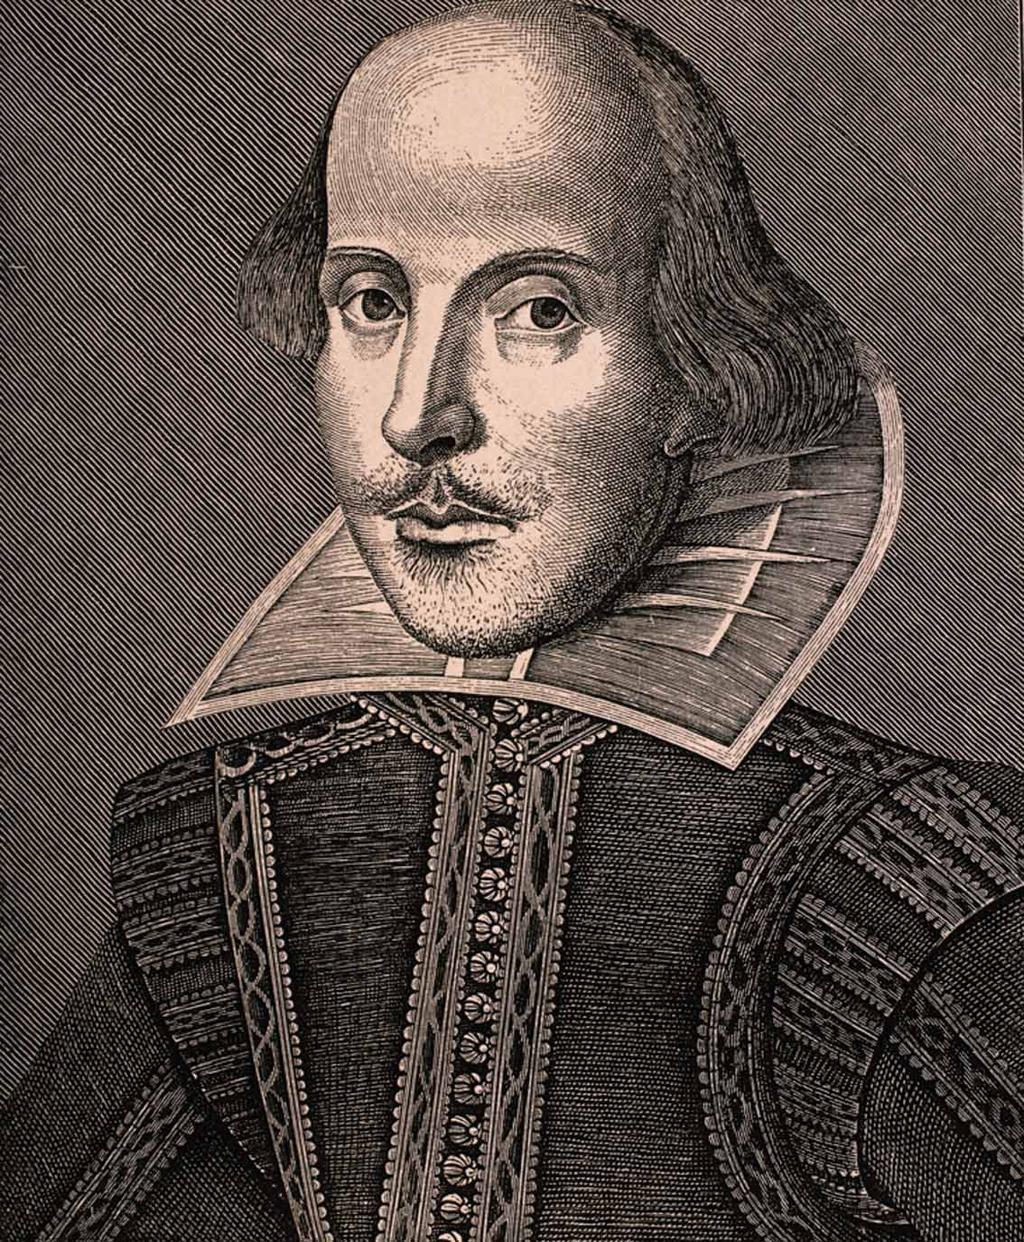 William Shakespeare This portrait of William Shakespeare is